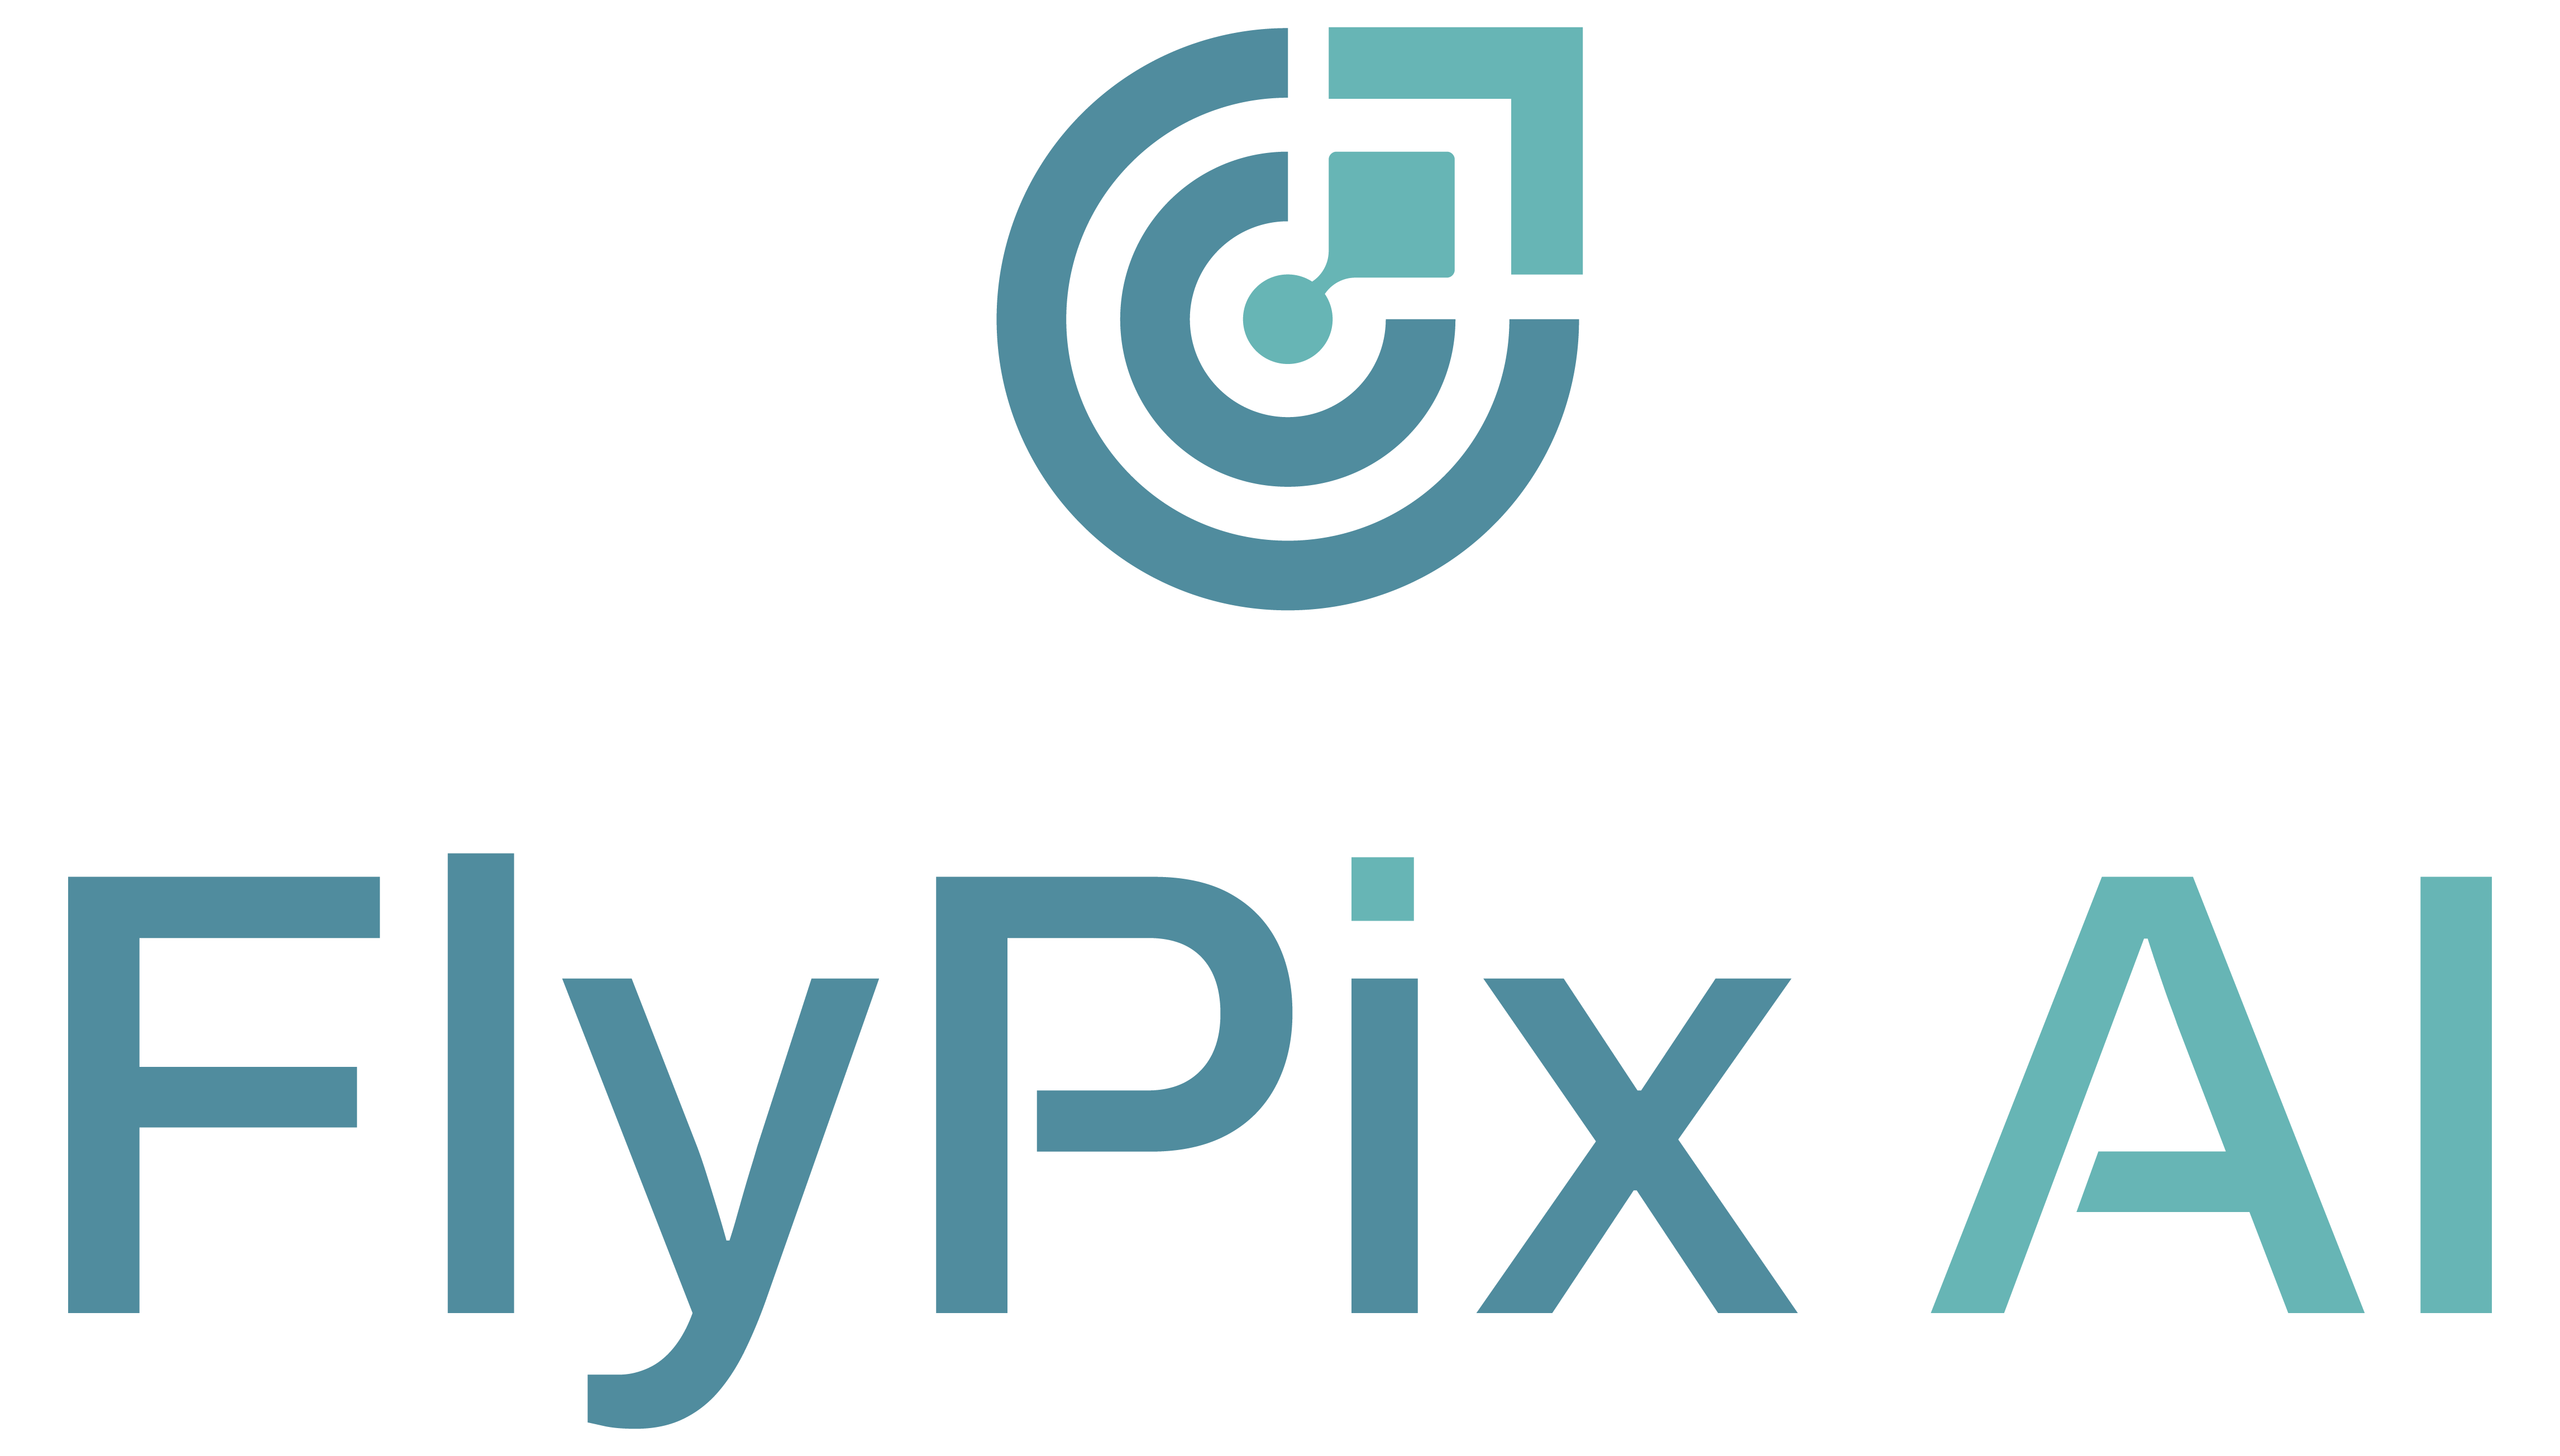 FlyPix AI